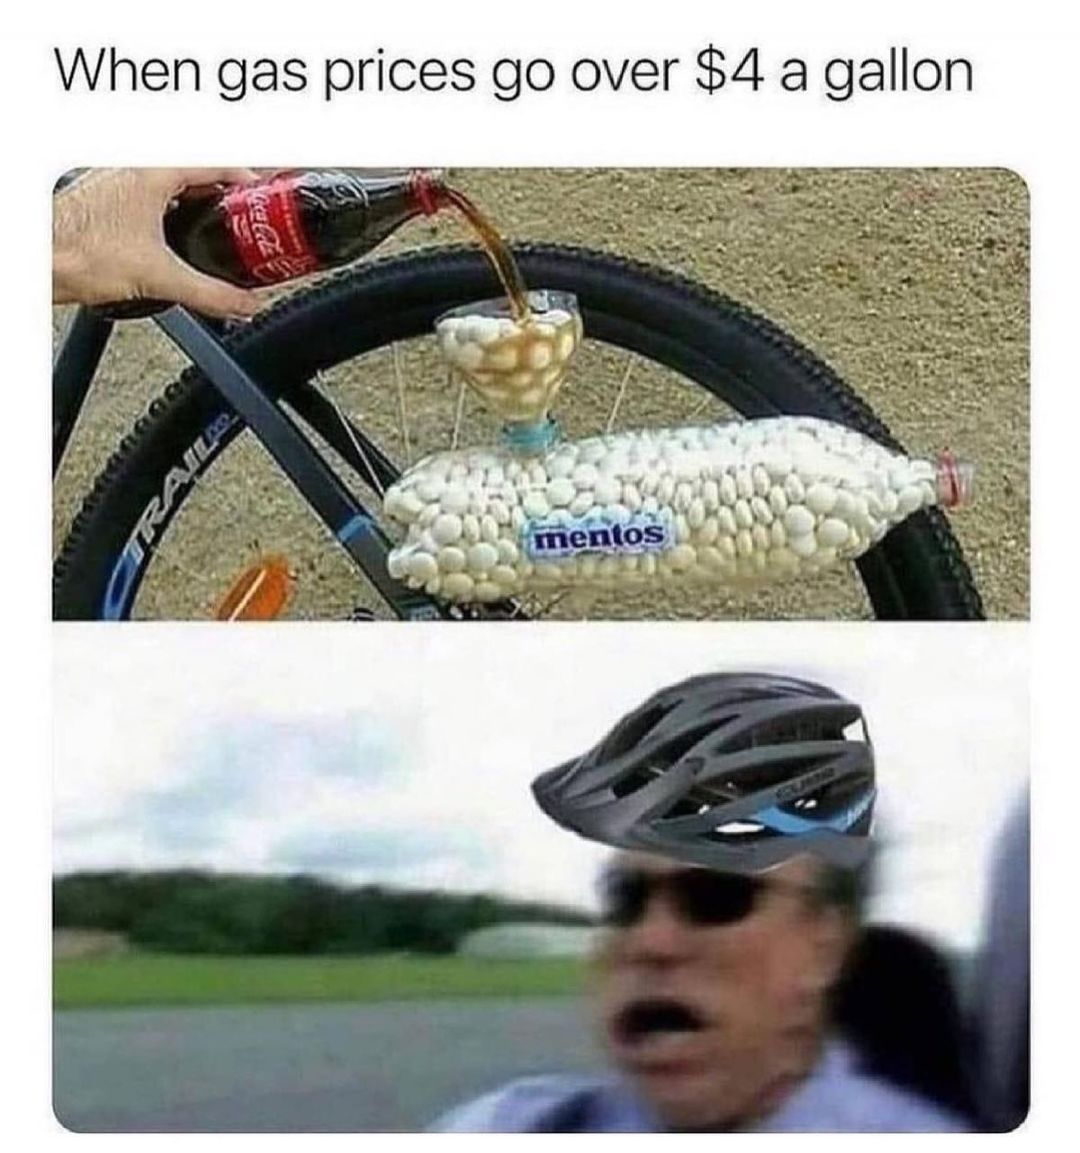 When gas prices go over $4 a gallon.